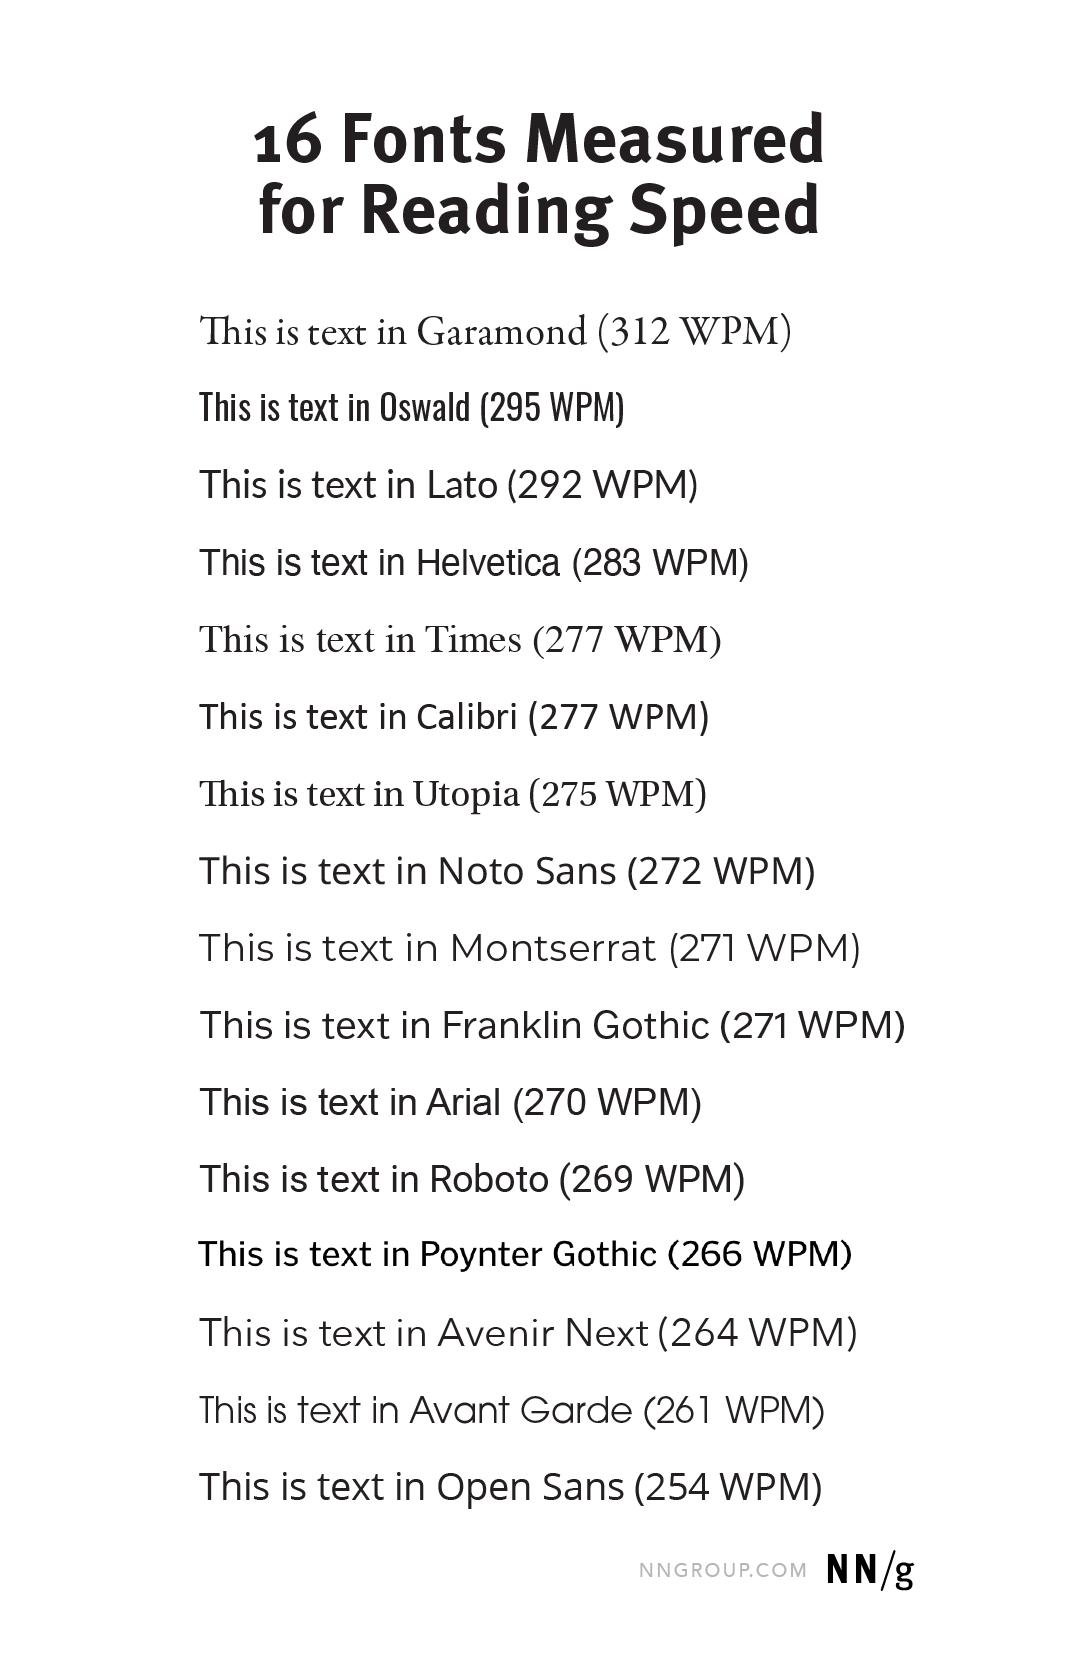 Lista de fontes utilizadas na pesquisa, com seus resultados de palavras por minuto, por NNg.